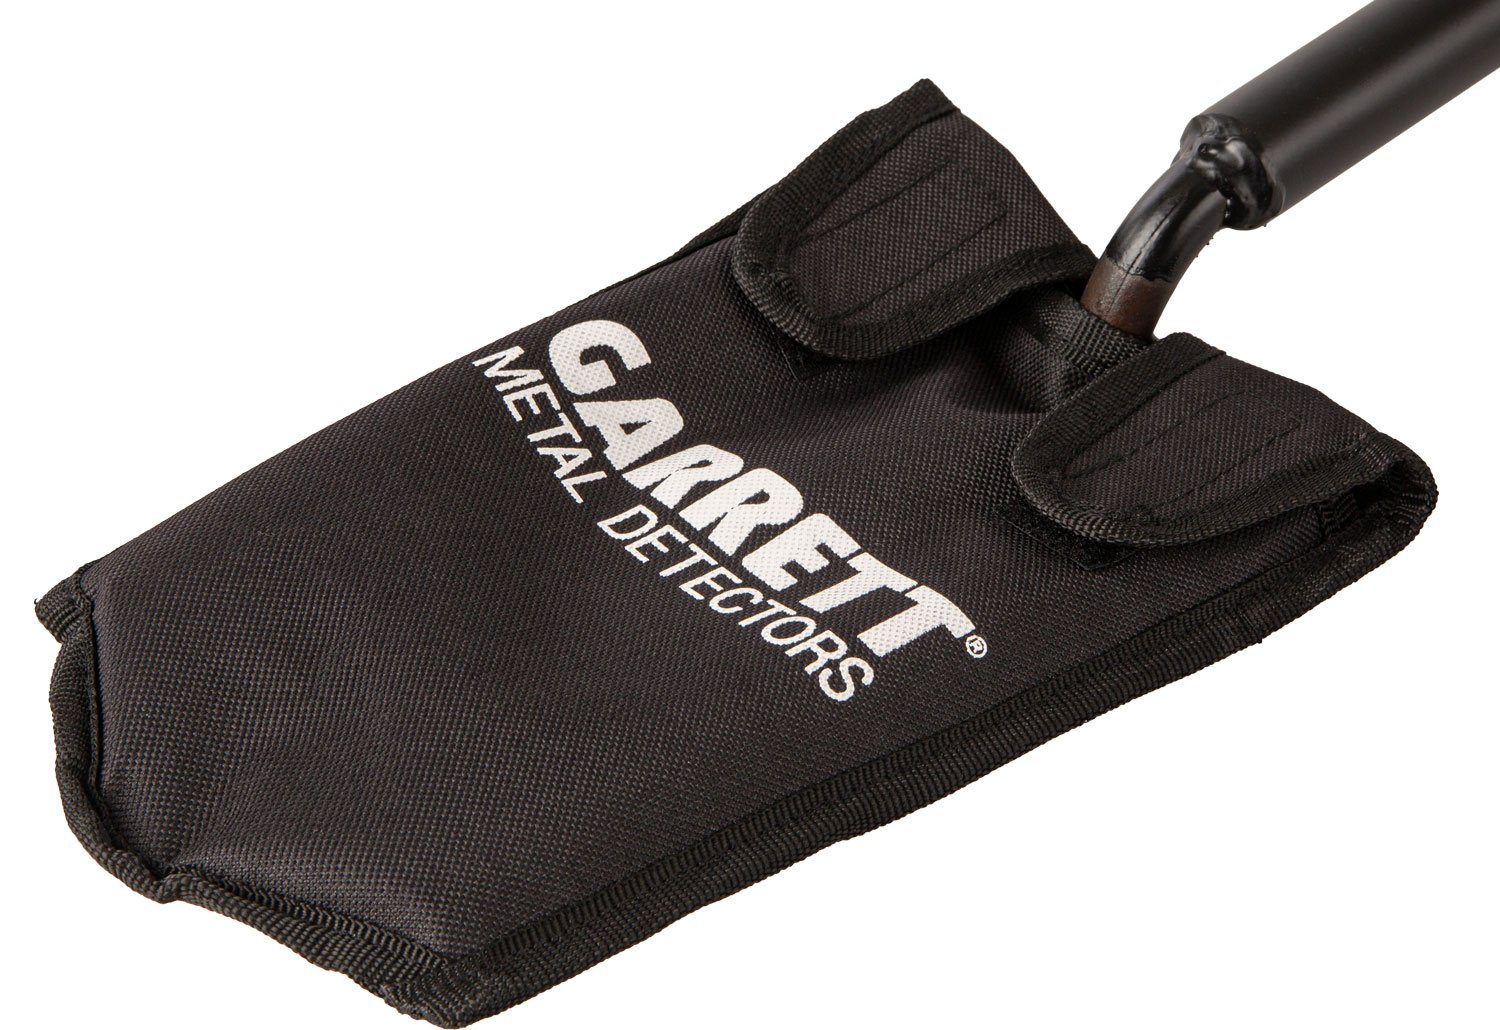 blade cover for garrett razor relic shovel metal detecting shovel